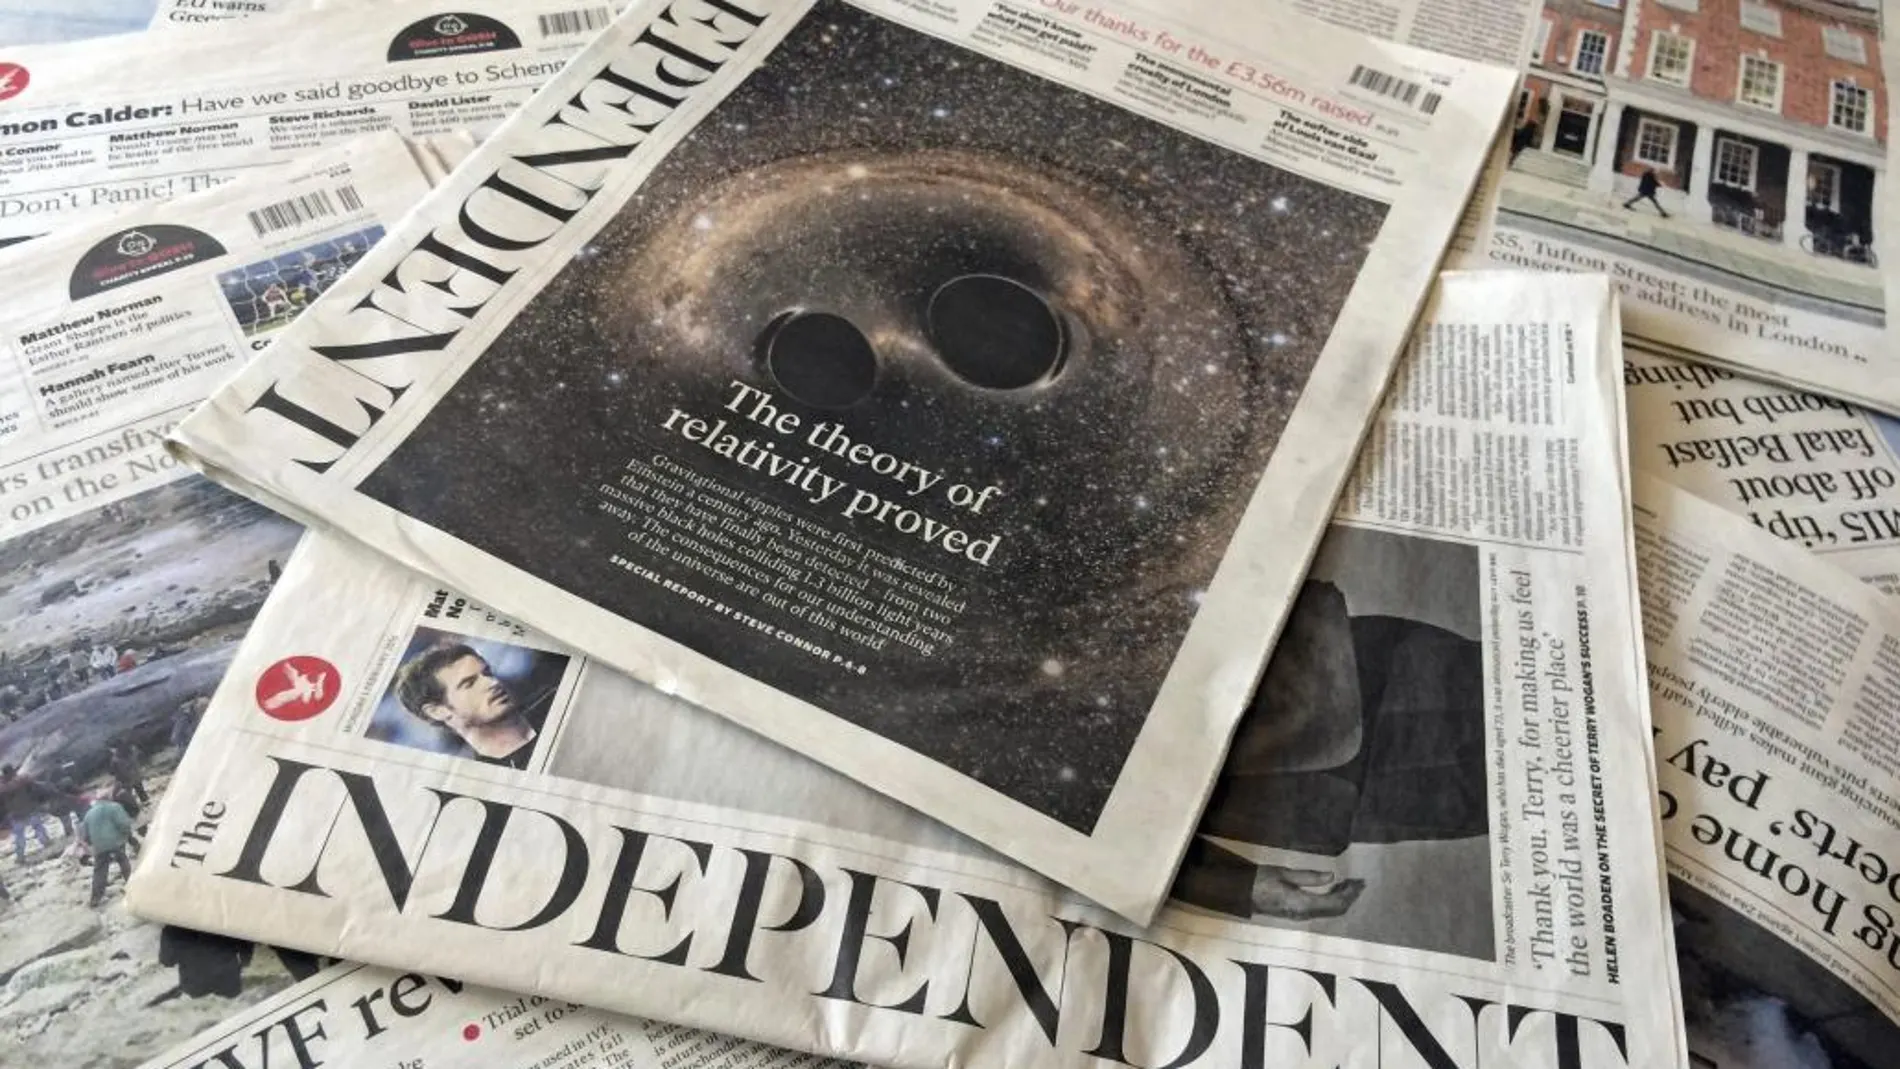 Vista de la edición de hoy del periódico "The Independent"en una tienda de Londres